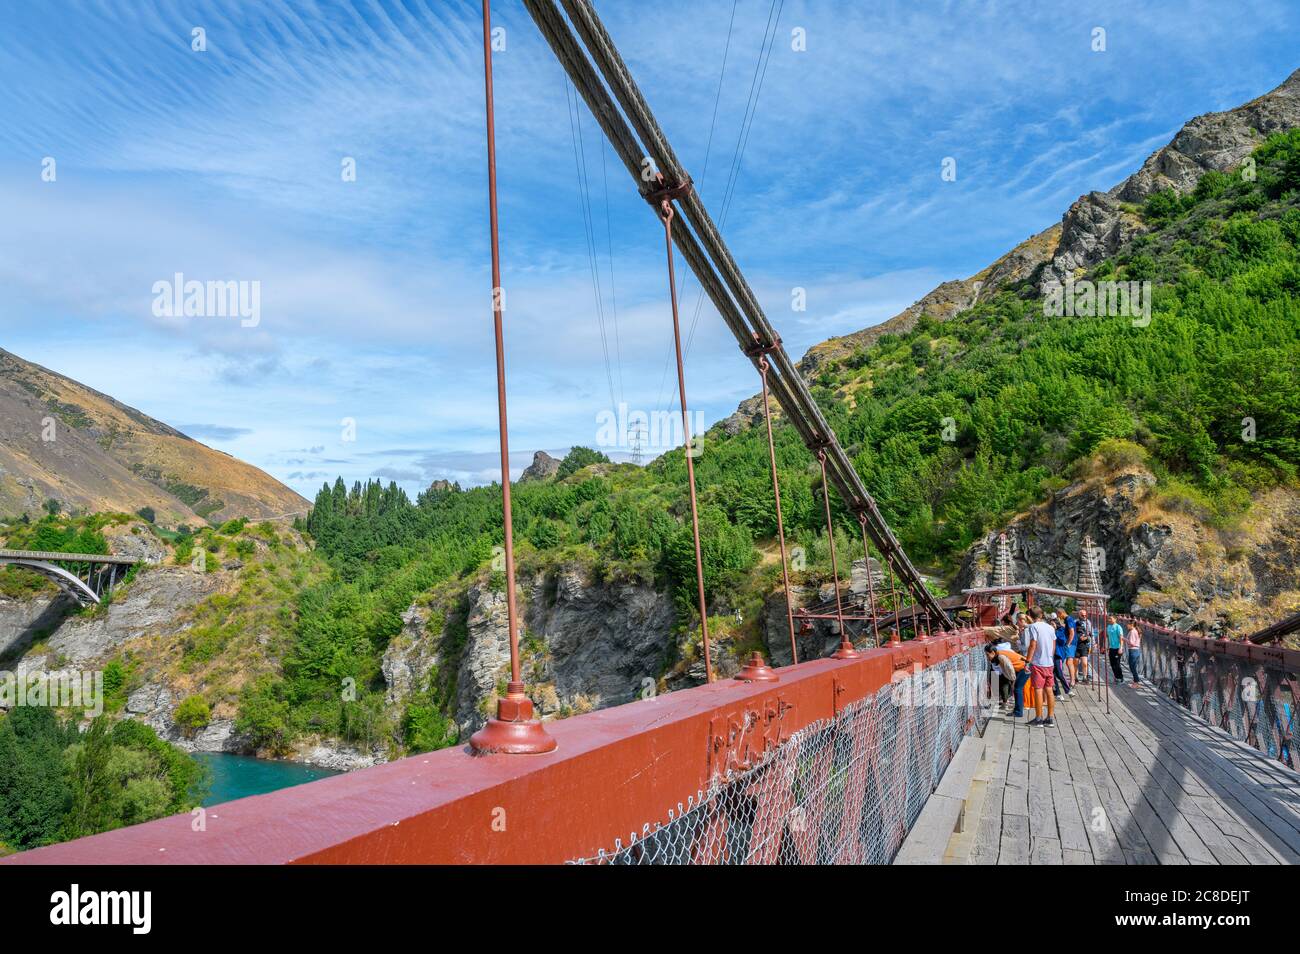 Touristes attendant de faire un saut à l'élastique du pont suspendu de Kawarau gorge, Otago, Nouvelle-Zélande. Le pont était le premier site de saut à l'élastique commercial au monde. Banque D'Images